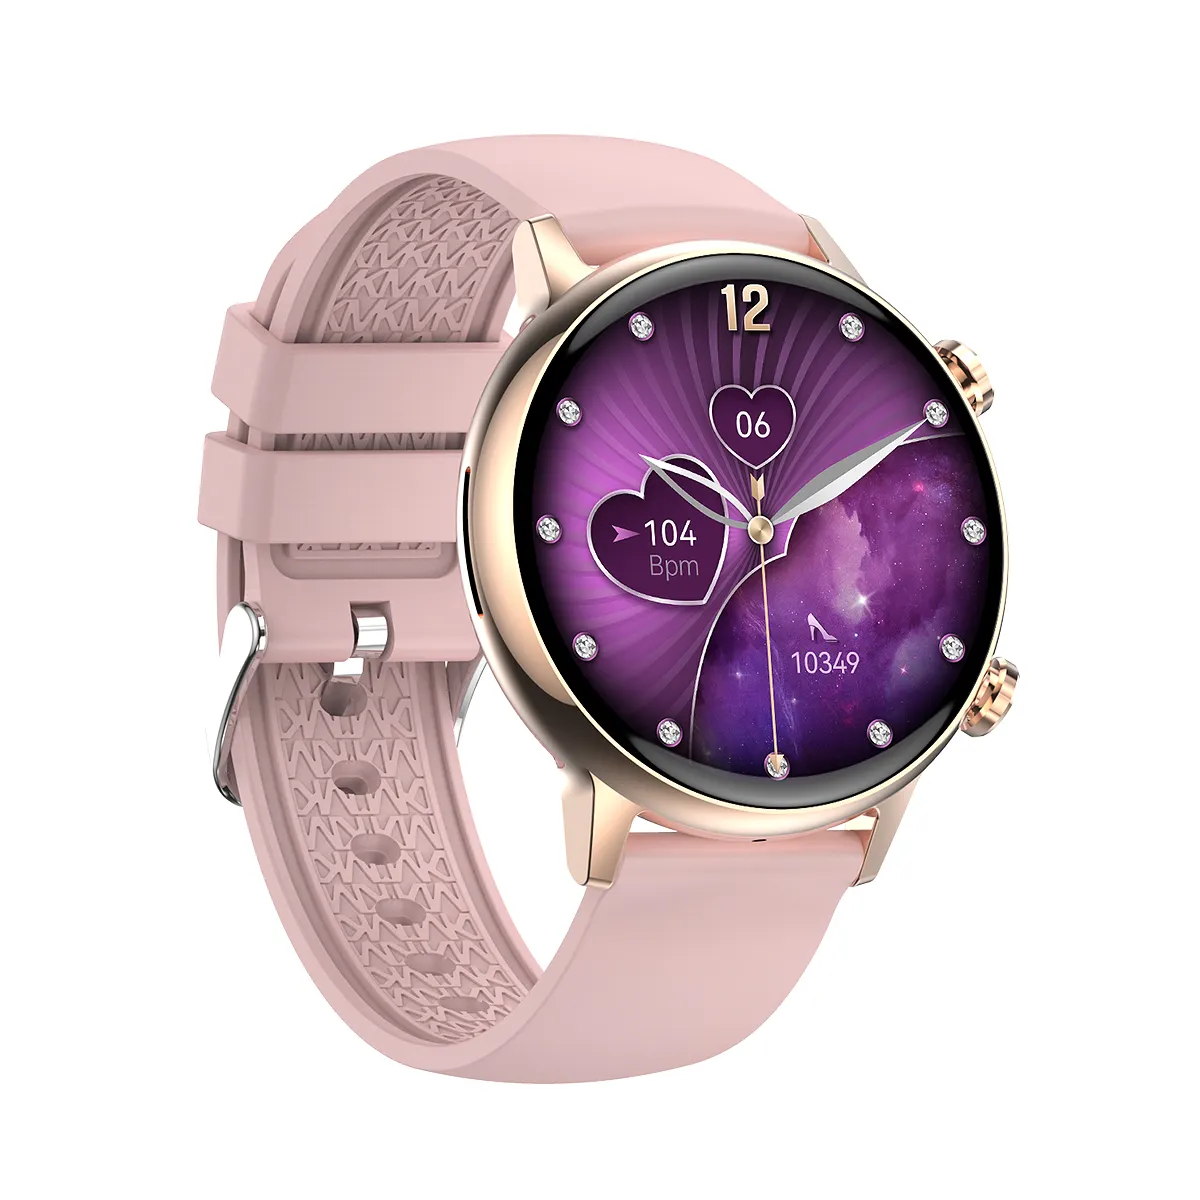 HK39 moda AMOLED smartwatch señora reloj inteligente control inteligente HK39 elegante esfera redonda All Touch HD T900 T800 S9 ultra 9 8